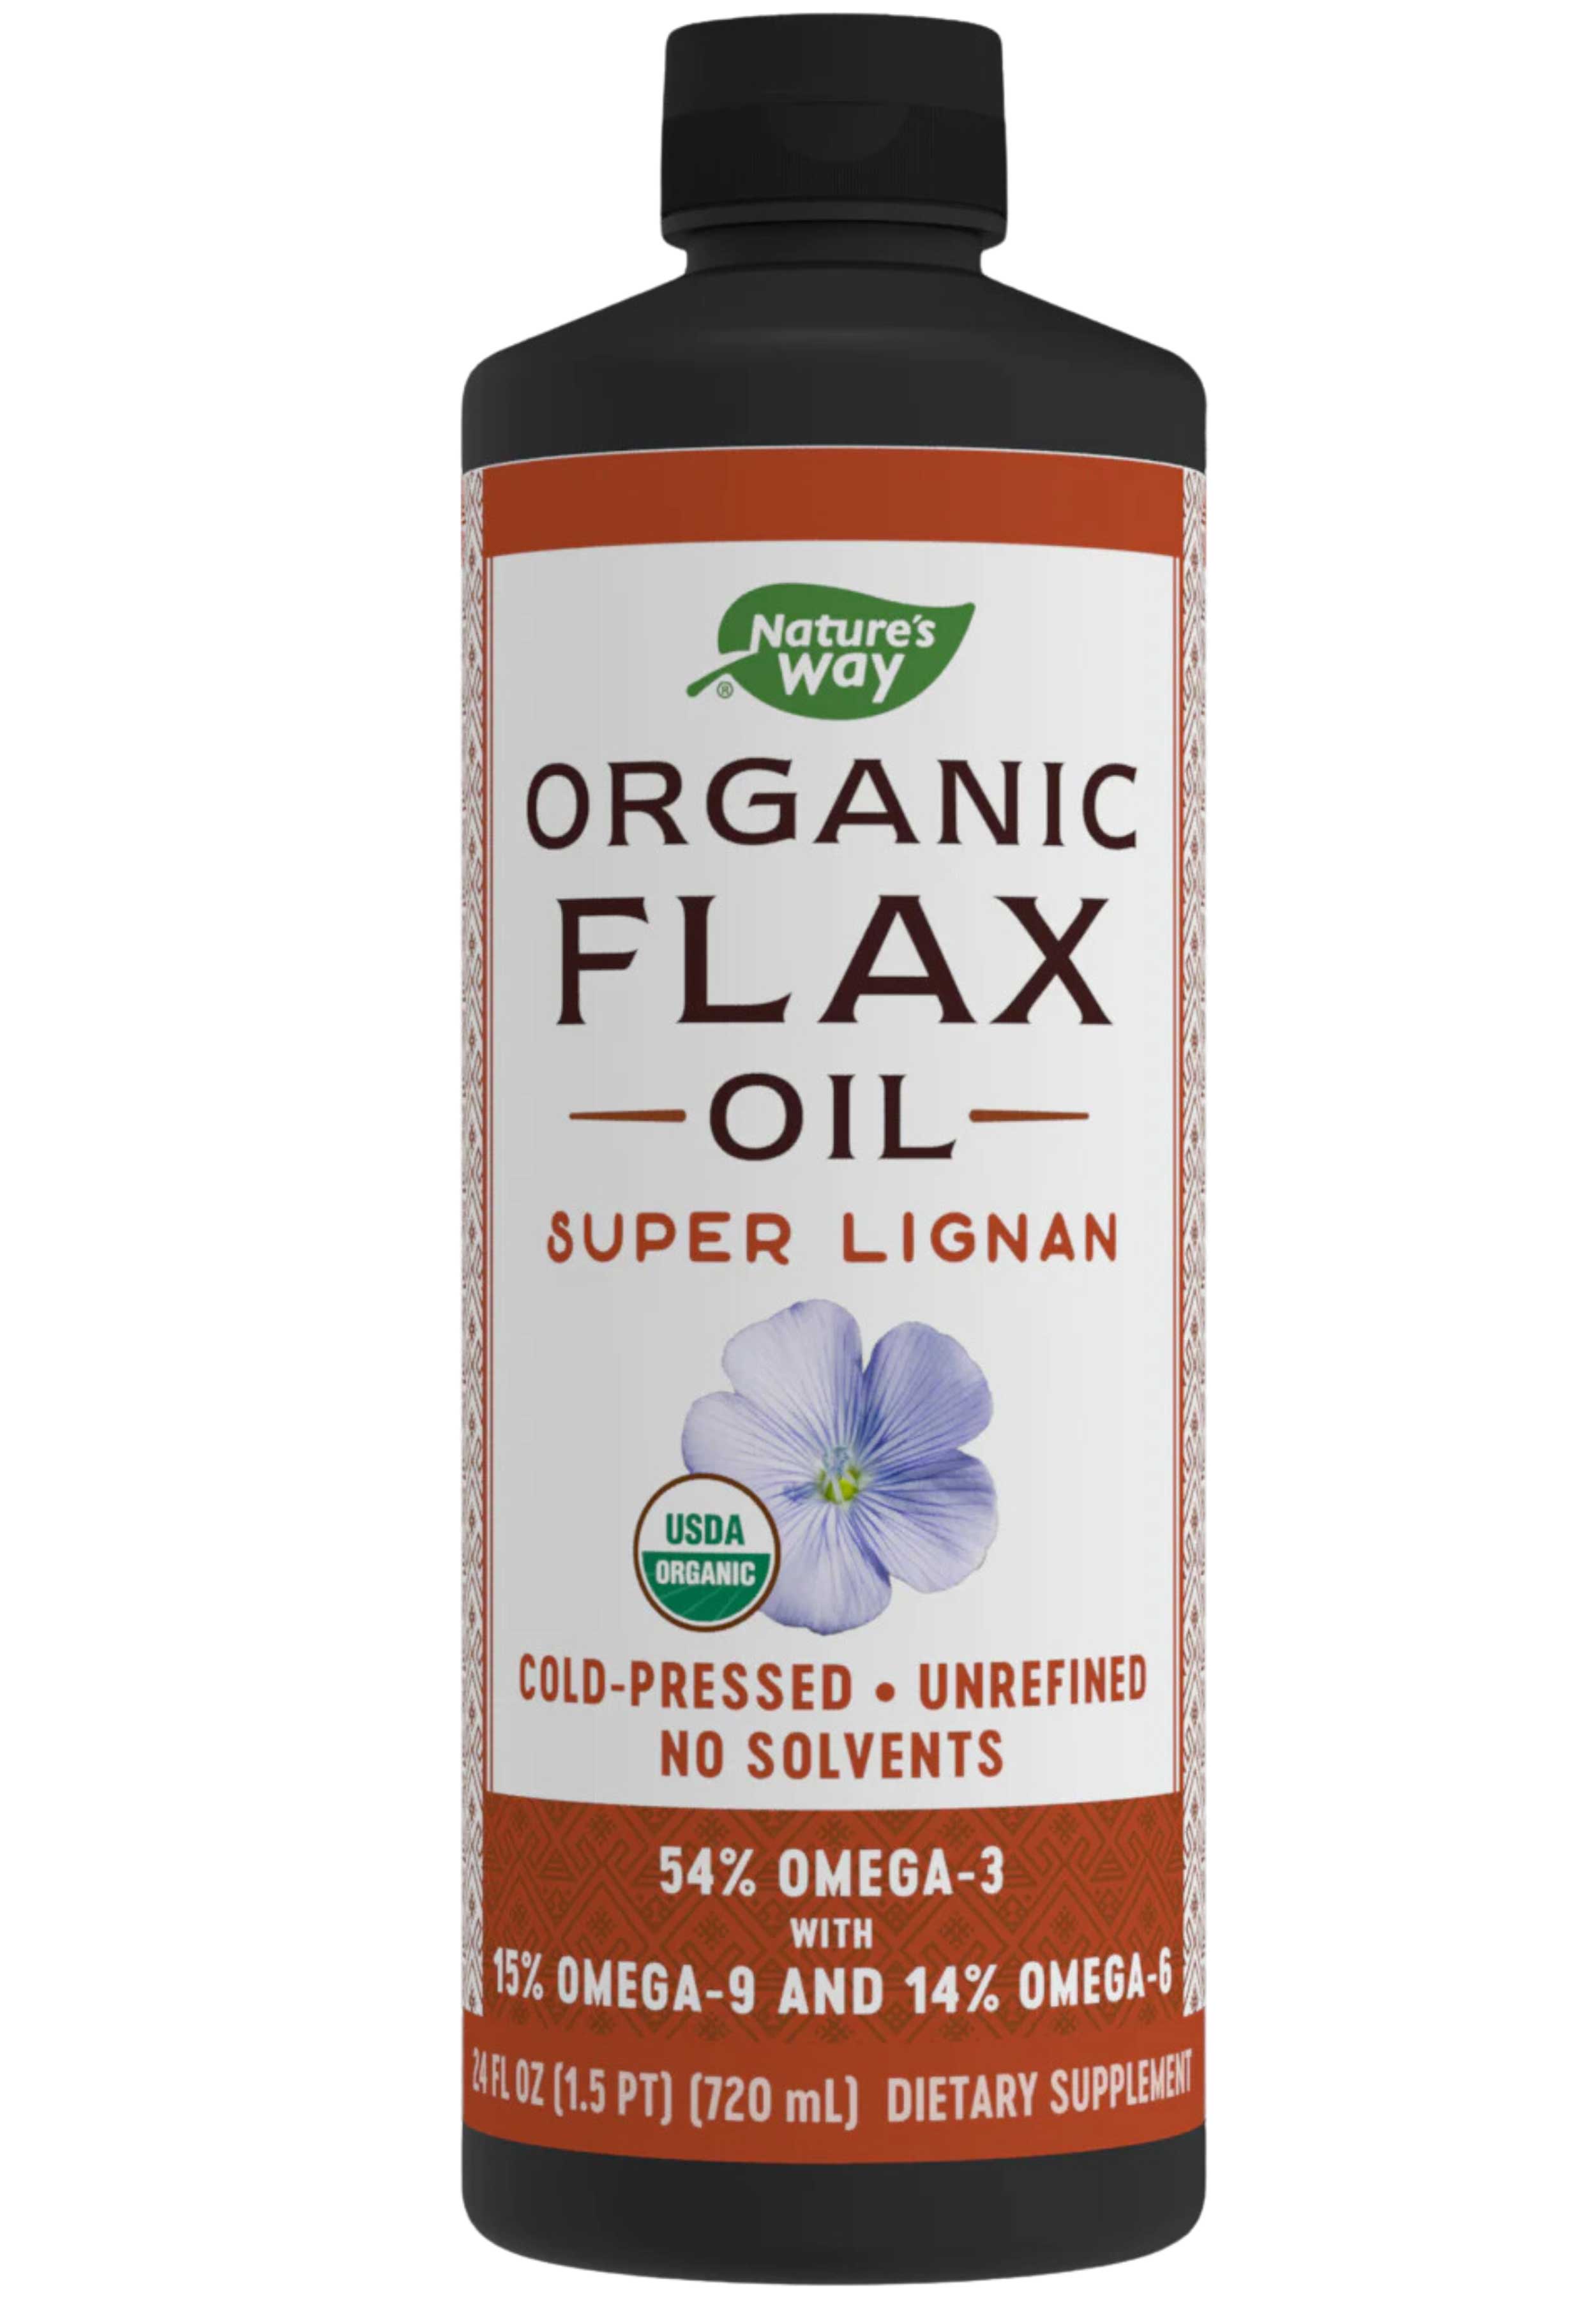 Nature's Way Flax Oil Super Lignan